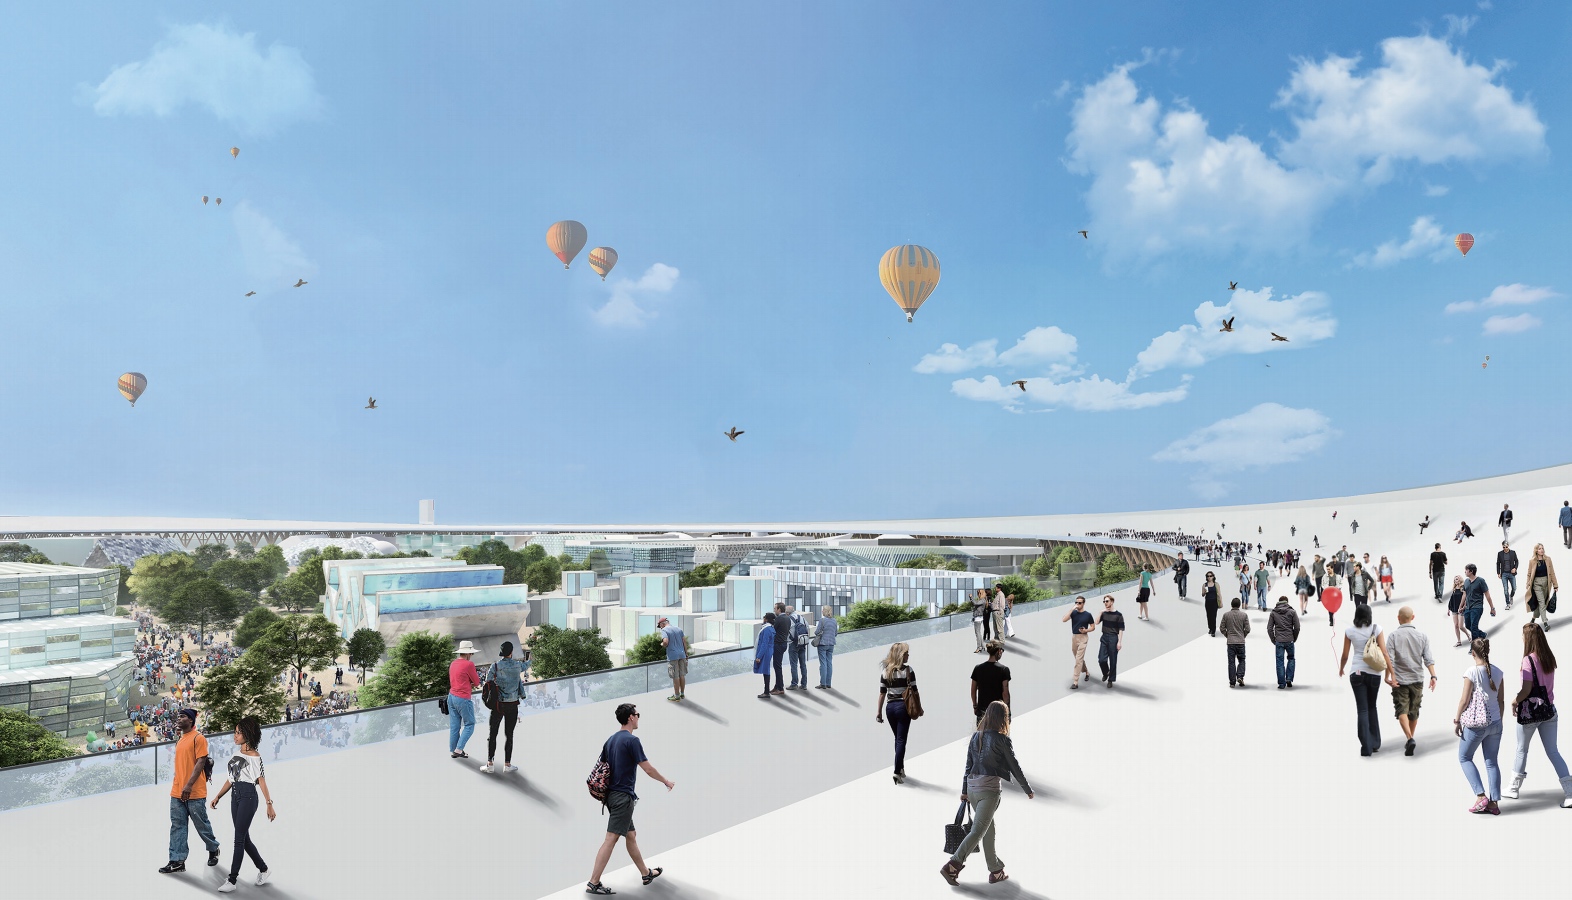 Die erhöhte Promenade soll zum Wahrzeichen der Expo 2025 werden.